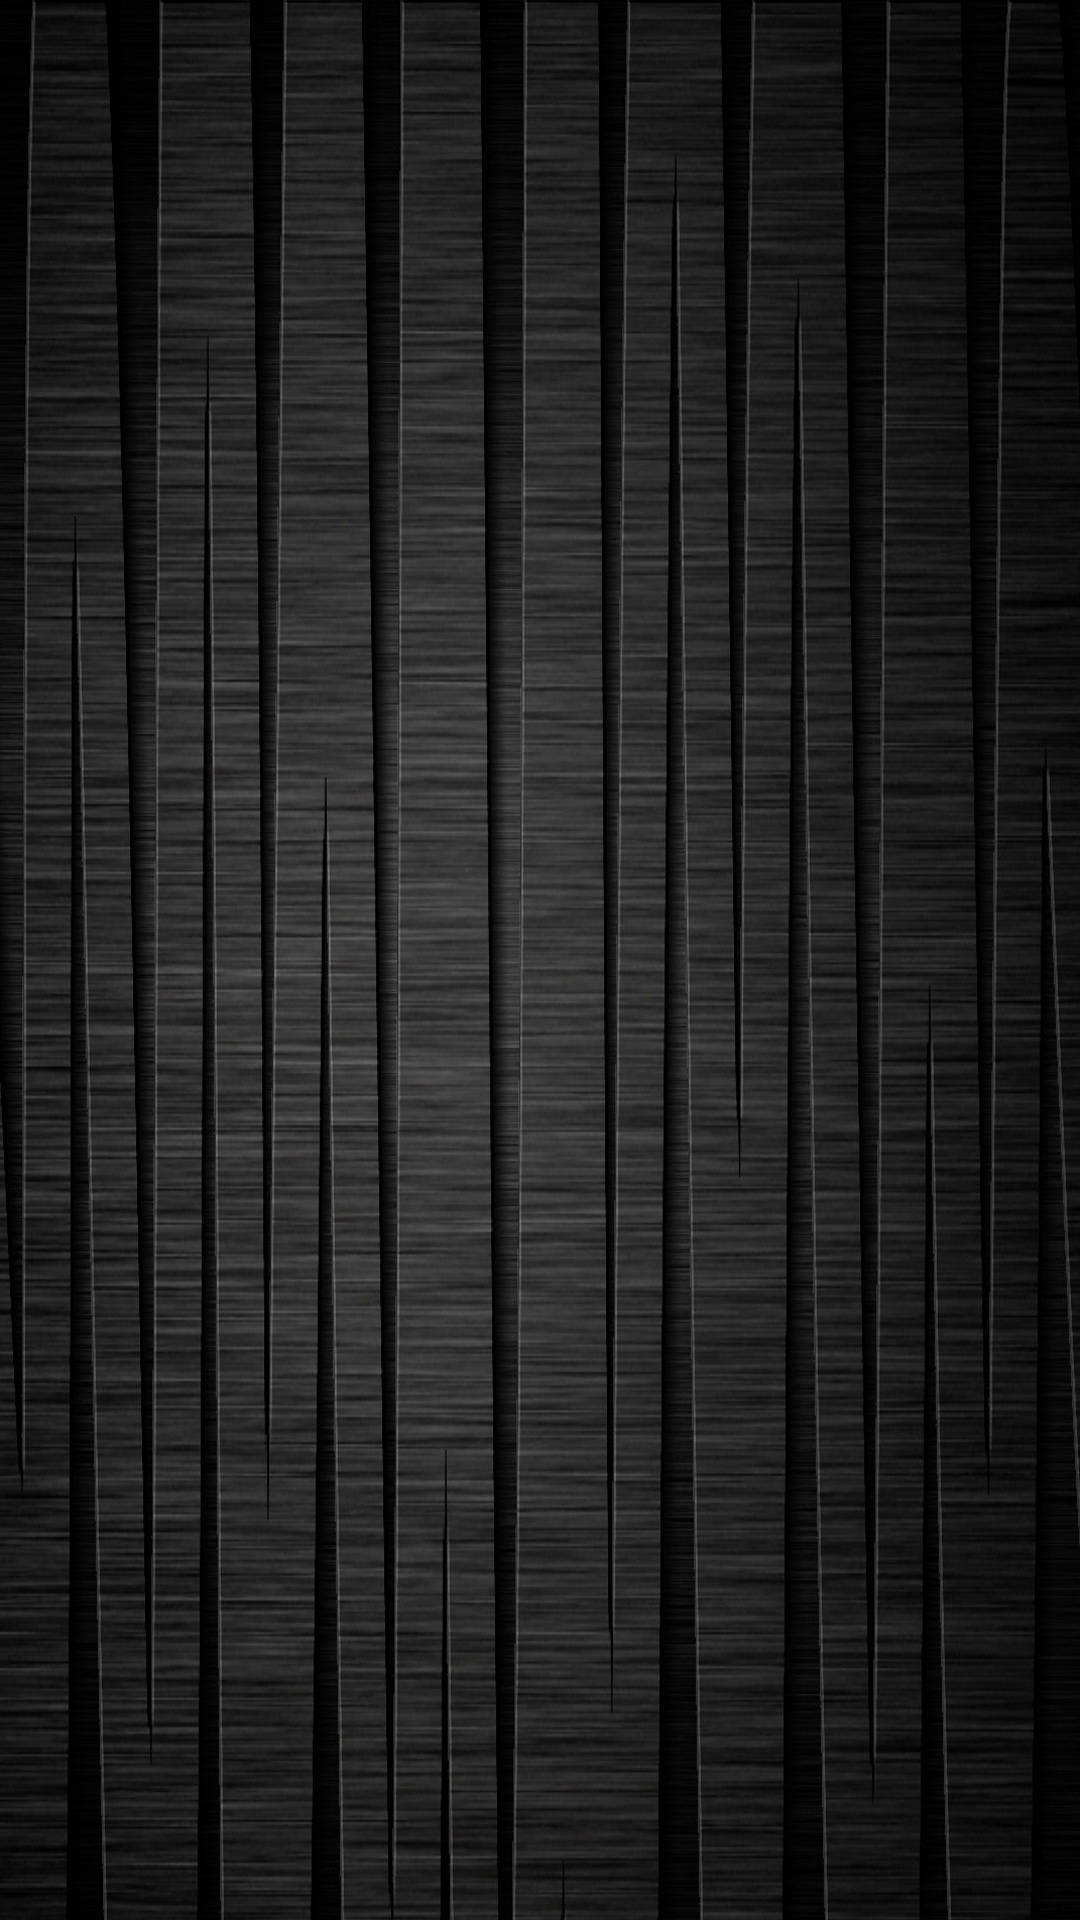 Hình nền gỗ đen: Với họa tiết gỗ đen tinh tế, hình nền này là sự lựa chọn hoàn hảo cho bất kỳ ai mong muốn thêm một chút phong cách sang trọng vào thiết bị của mình. Sự kết hợp giữa màu đen chuyên nghiệp và vân gỗ đen tạo ra một không gian làm việc hoặc giải trí tuyệt đẹp, đầy sức hút.